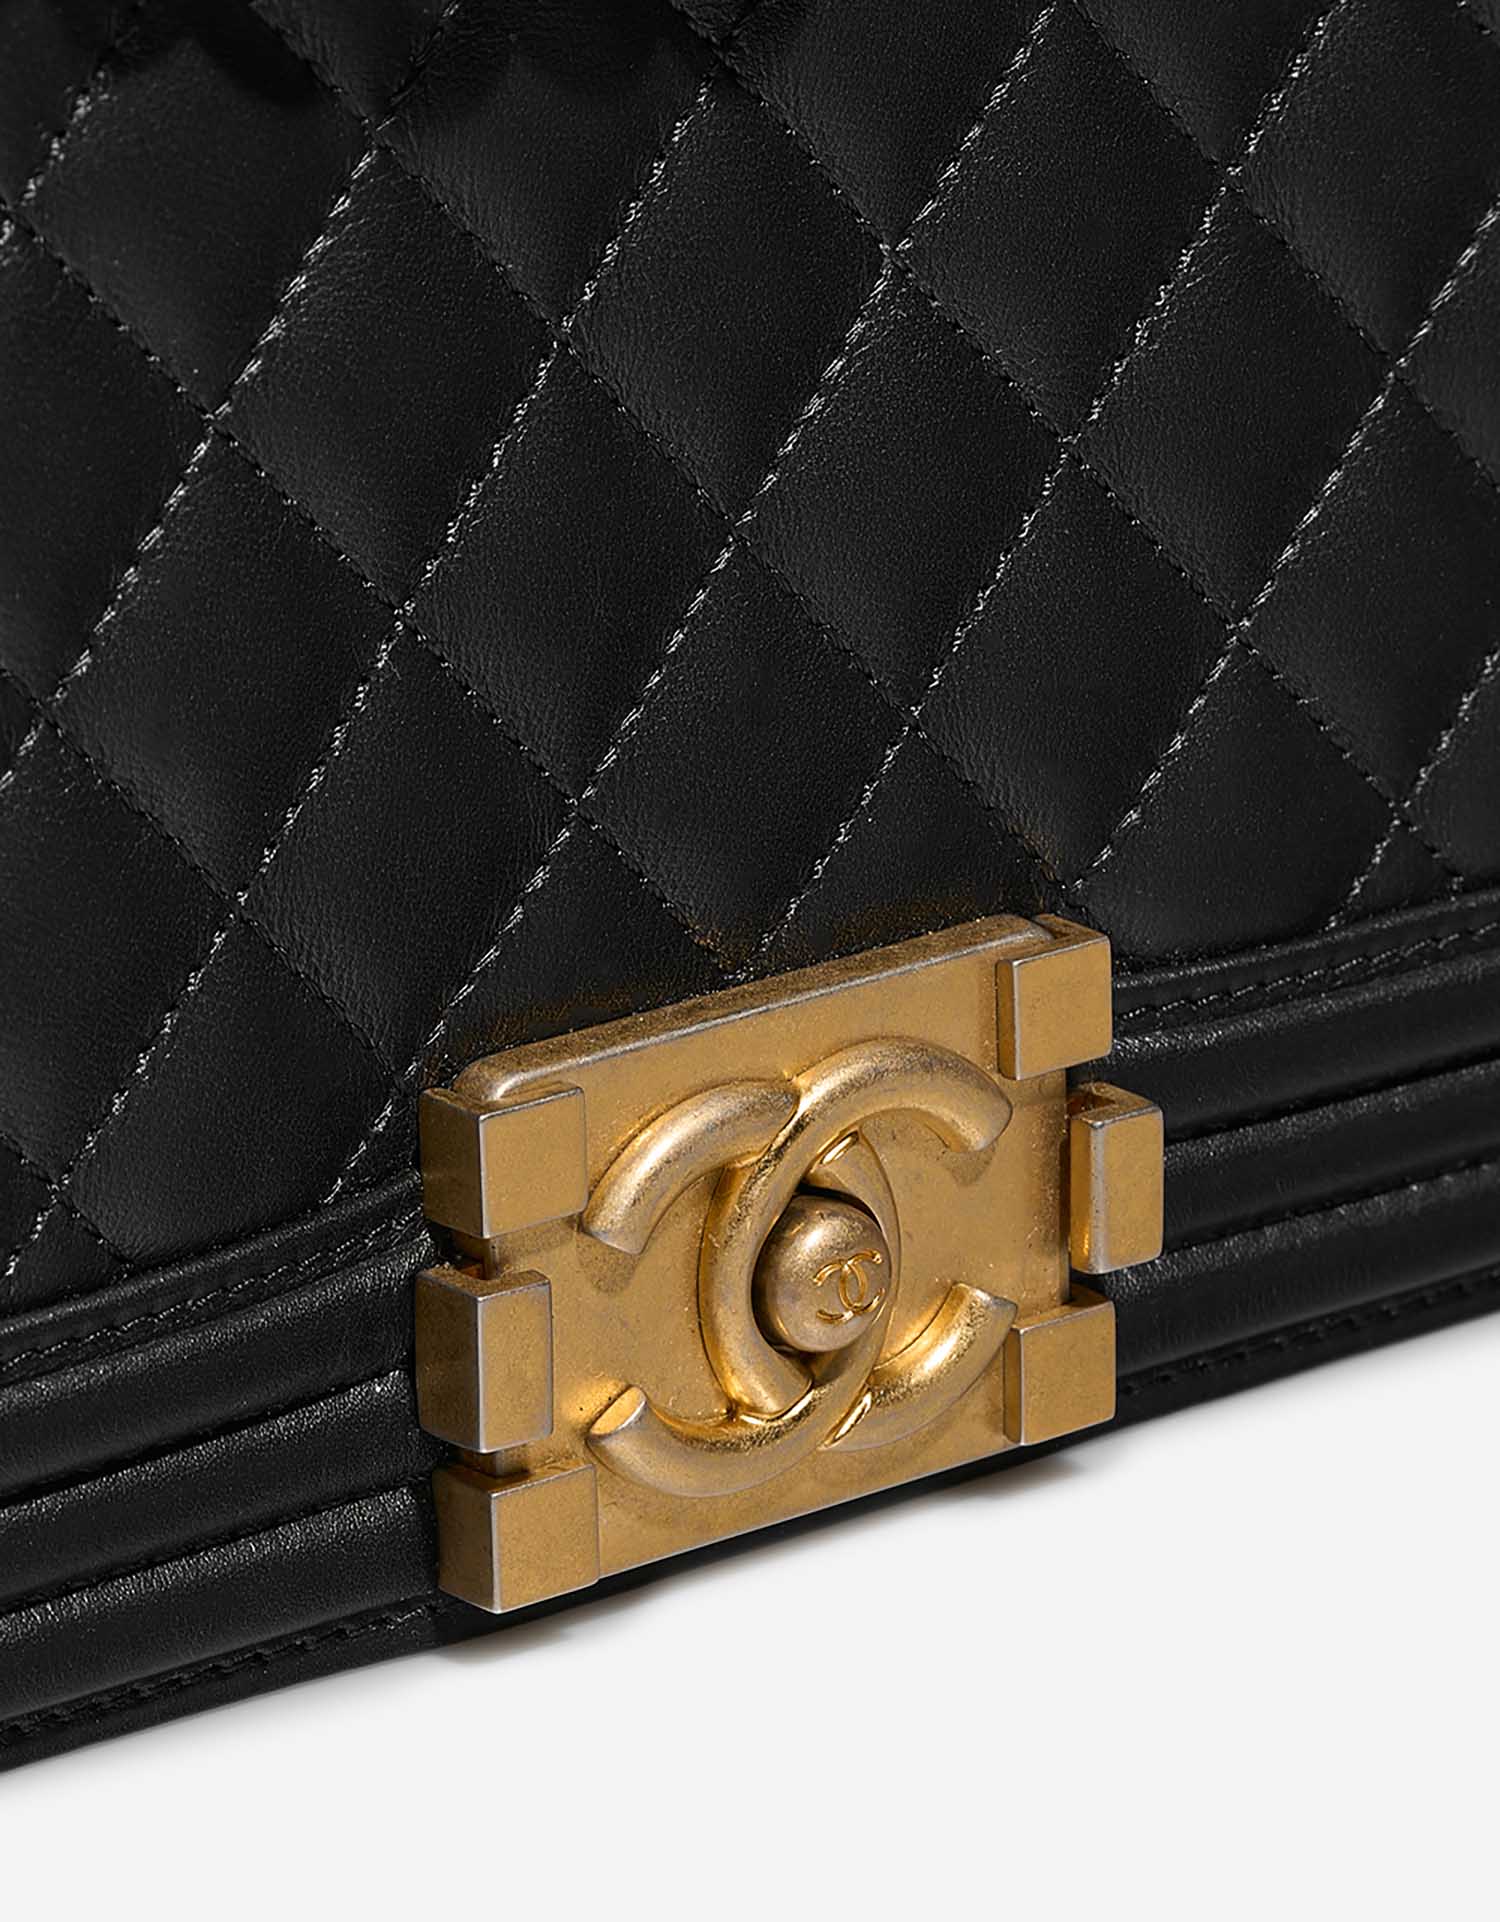 Chanel Boy NewMedium Schwarz Verschluss-System | Verkaufen Sie Ihre Designer-Tasche auf Saclab.com